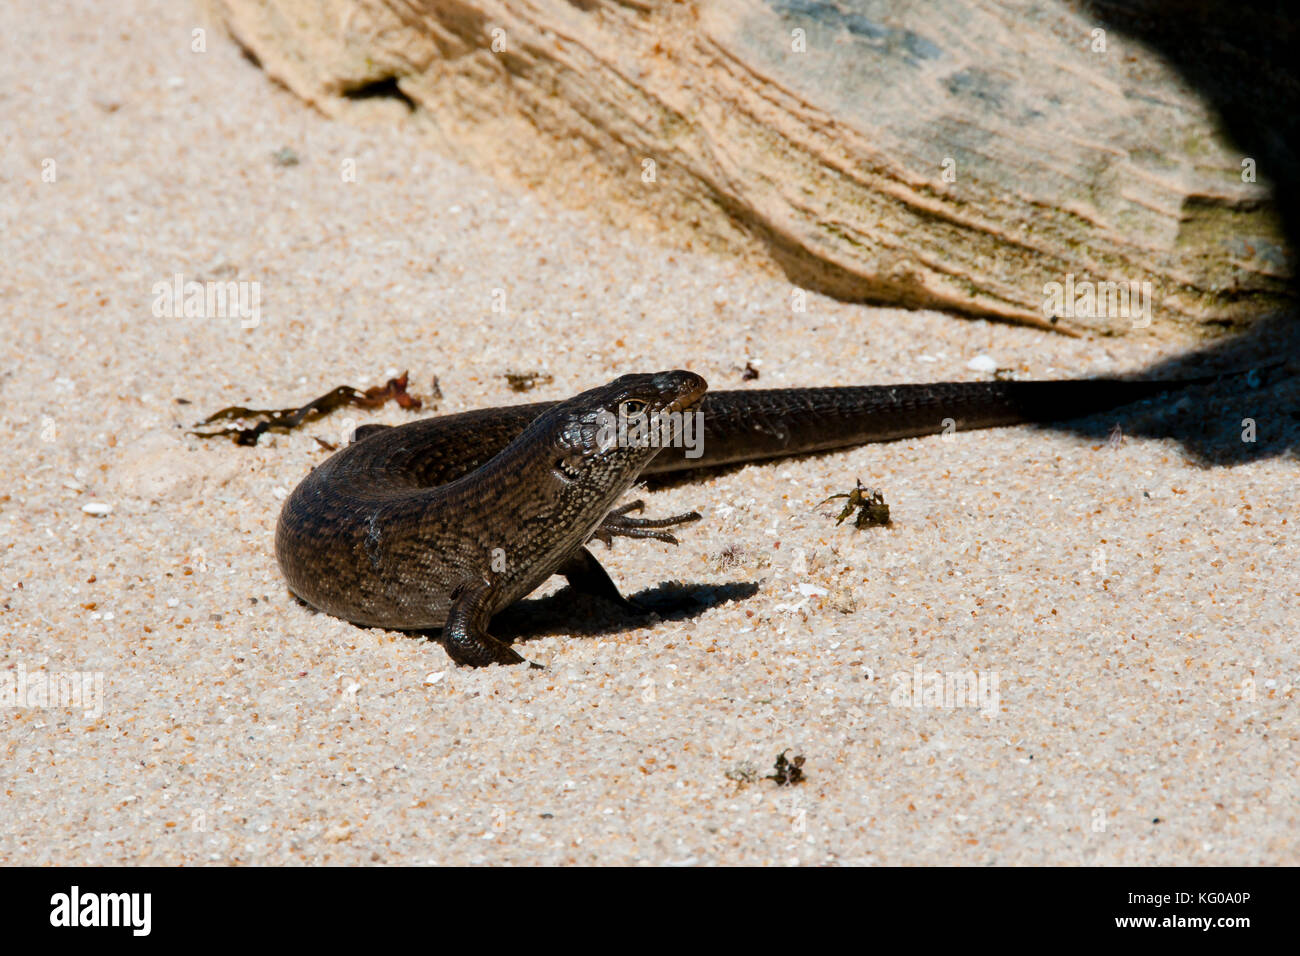 King's skink lizard - Rottnest Island - Australie Banque D'Images